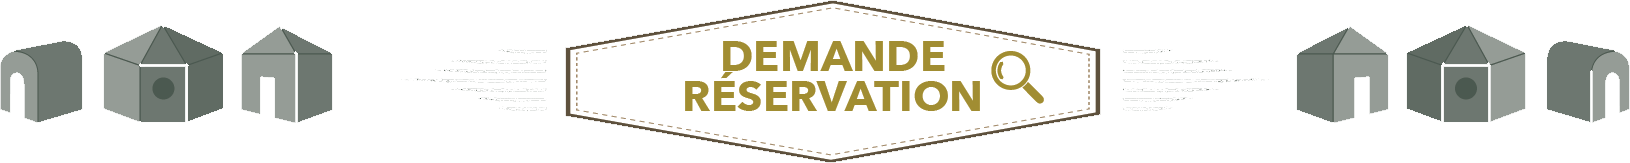 demande-reservation